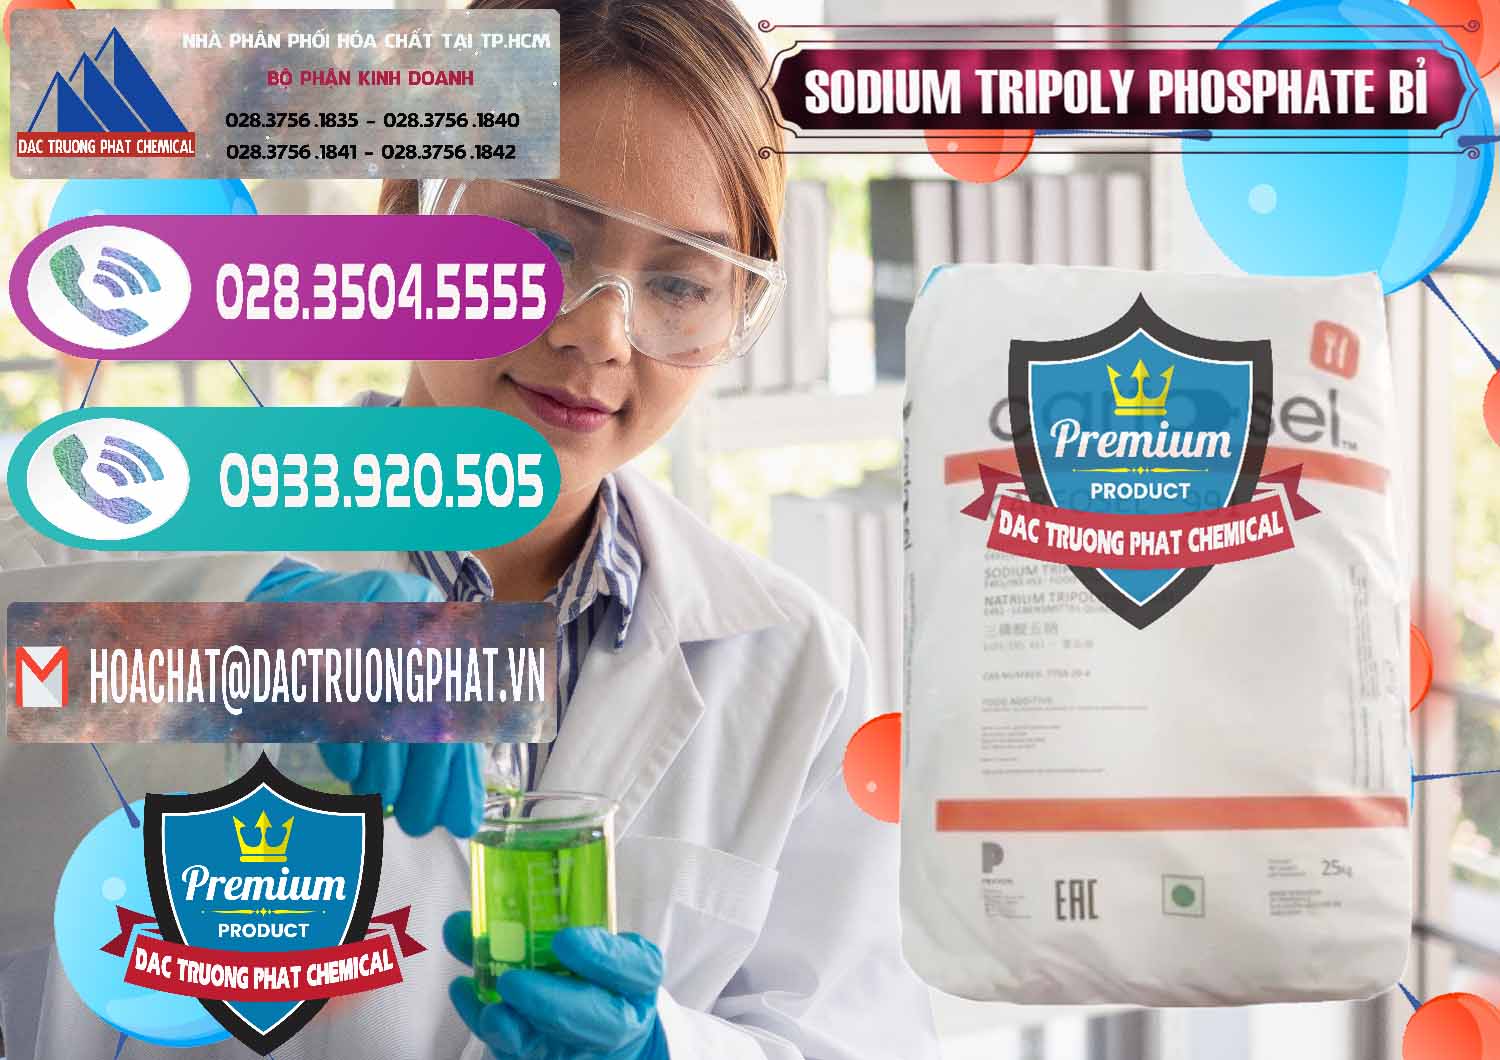 Cty chuyên kinh doanh _ bán Sodium Tripoly Phosphate - STPP Carfosel 991 Bỉ Belgium - 0429 - Nhà cung ứng và phân phối hóa chất tại TP.HCM - hoachatxulynuoc.com